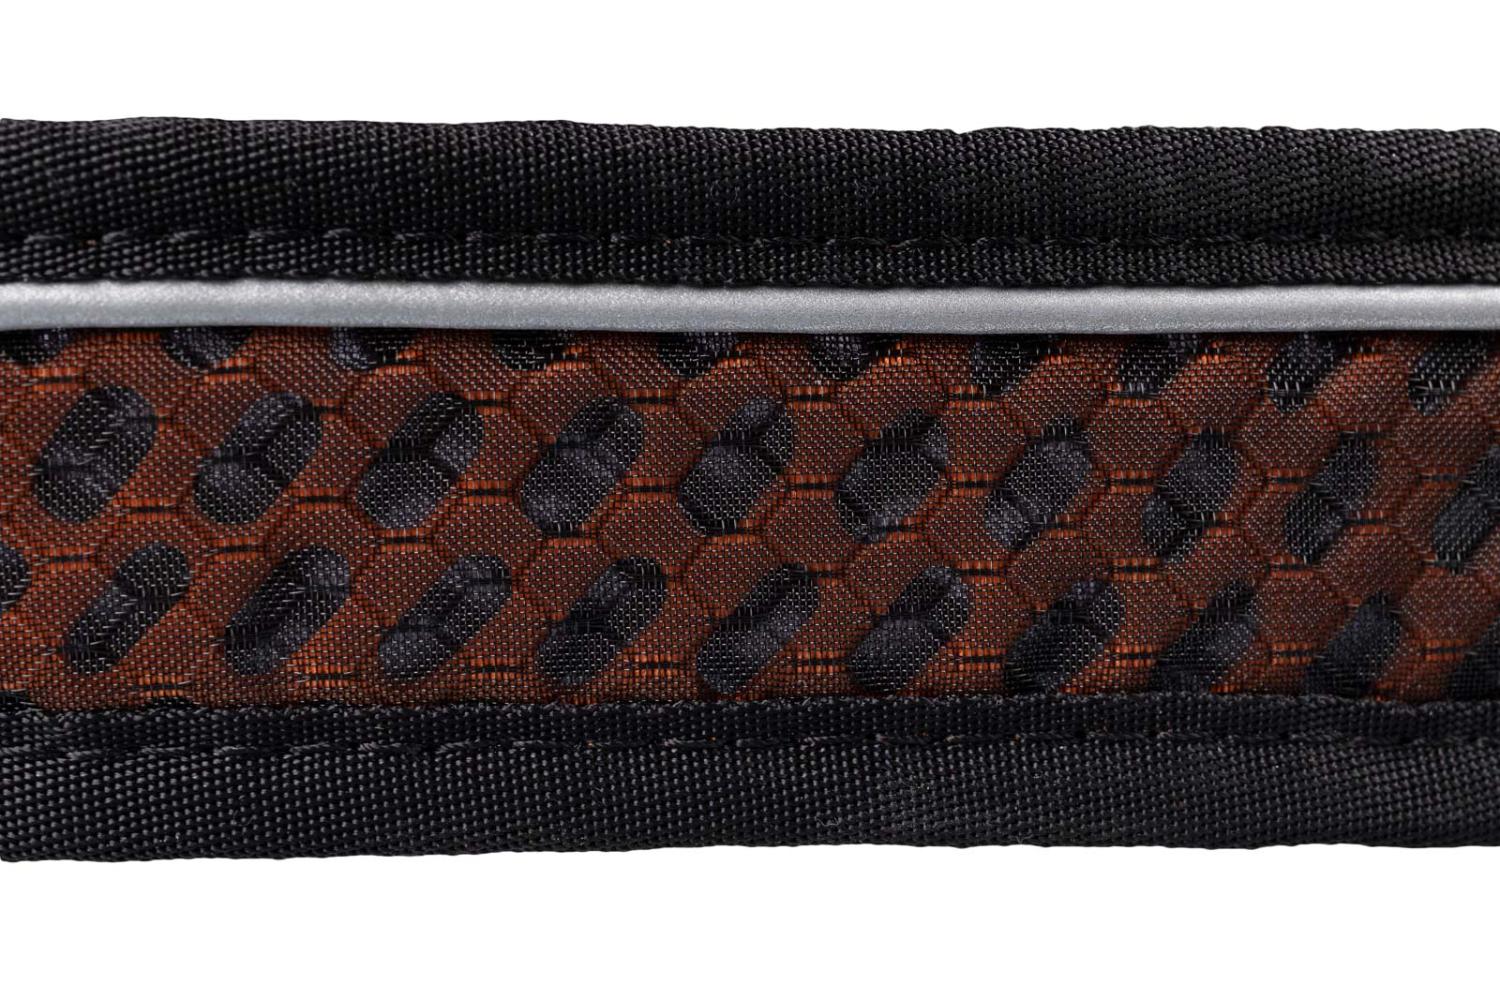 Rock collar 3.0 är tillverkat med vårt unika HexiVent trippelmeshmaterial. Detta material är lätt och ger hög andningsförmåga utan att göra avkall på hållbarheten.